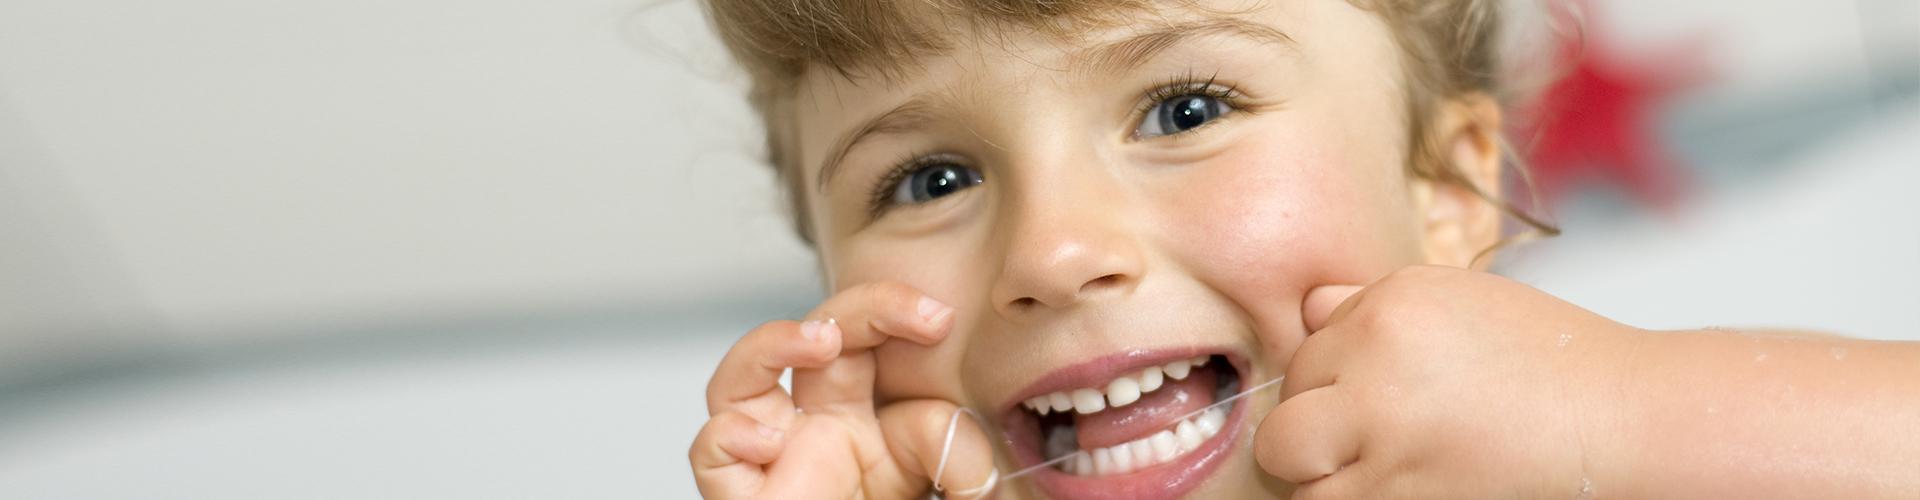 Gyermekkorban elhanyagolható a fogselyem használata?